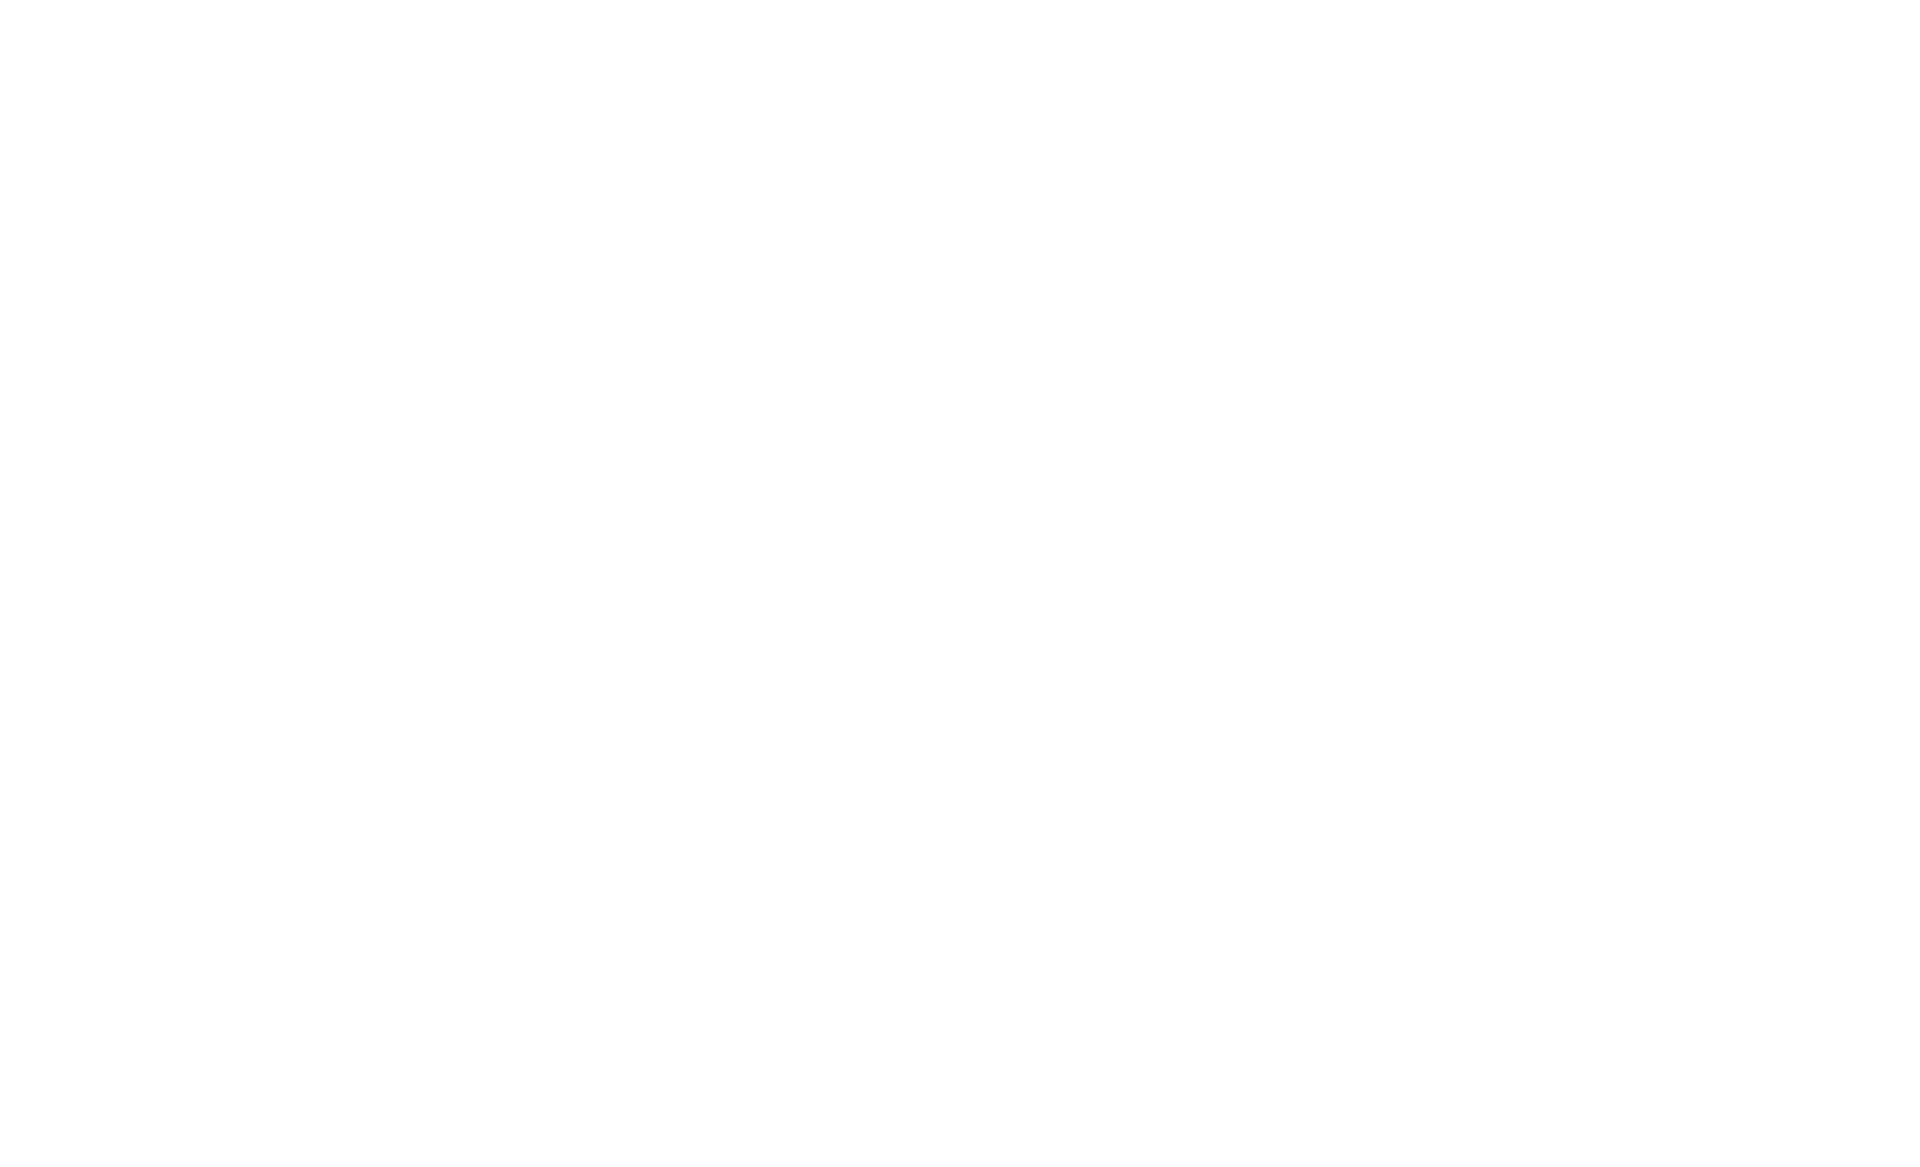 Logo Productika